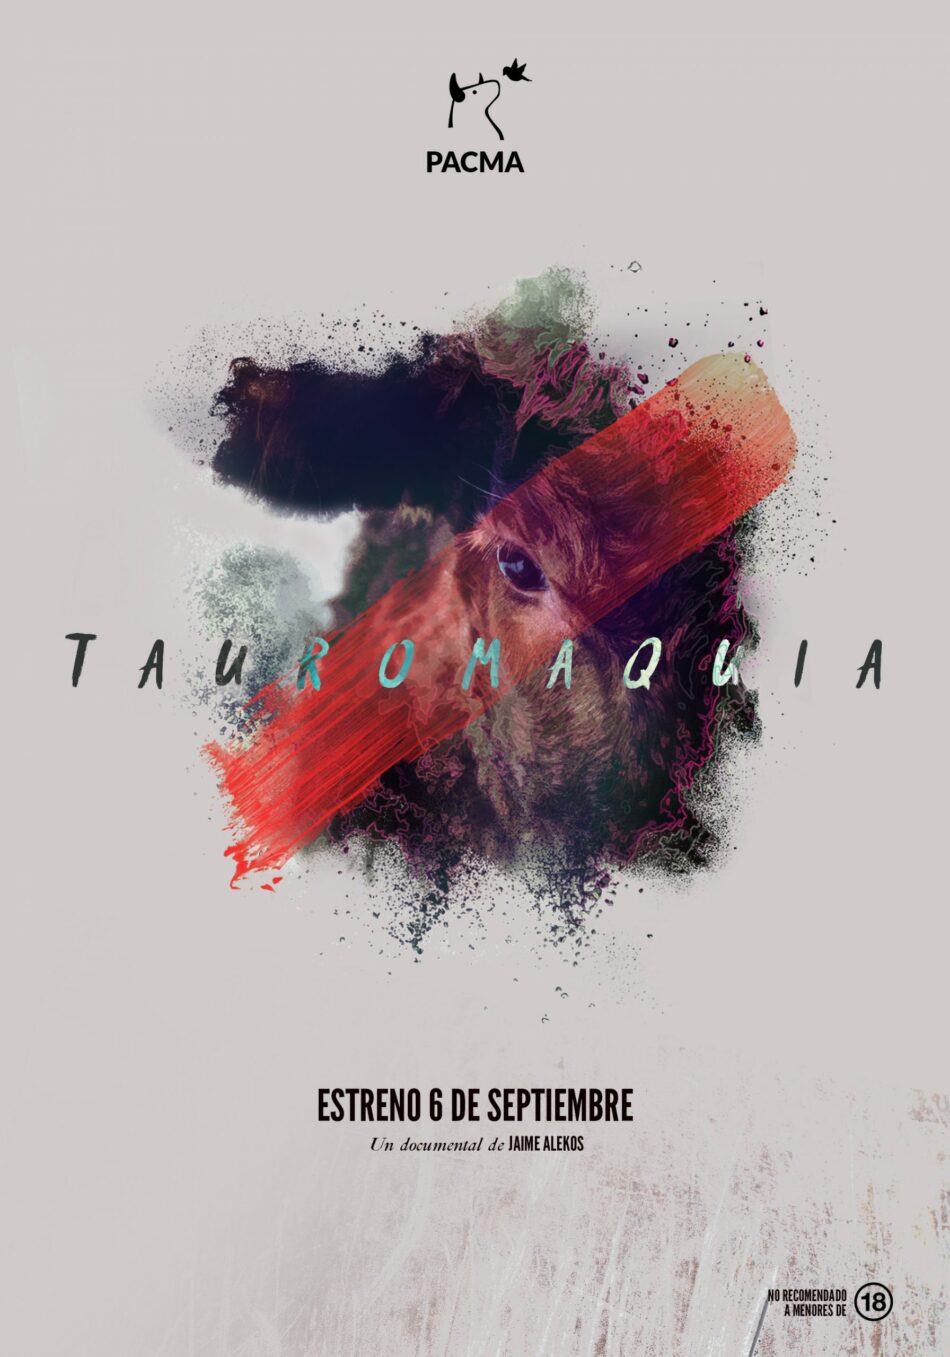 PACMA publica el tráiler del documental ‘Tauromaquia’, que presenta el próximo 30 de agosto para medios de comunicación